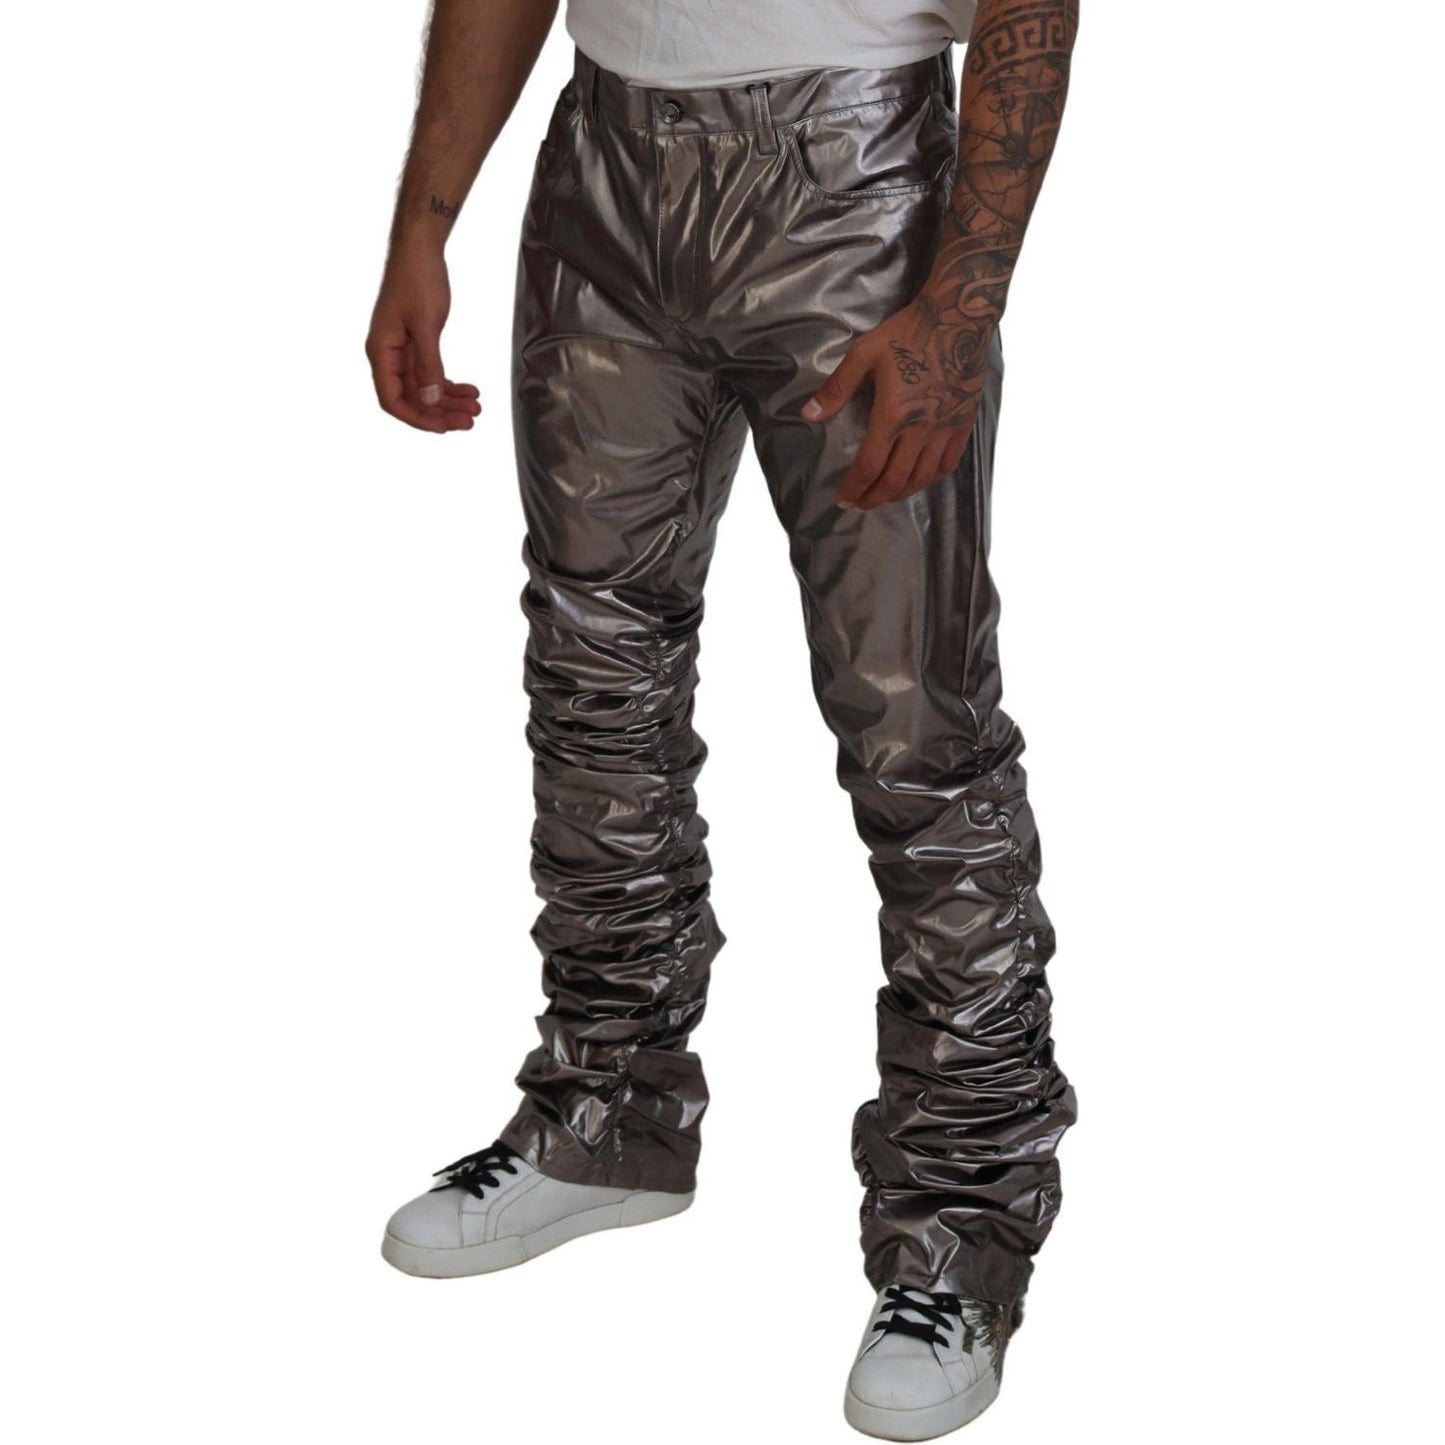 Dolce & Gabbana Metallic Silver Casual Pants silver-metallic-nylon-stretch-pants